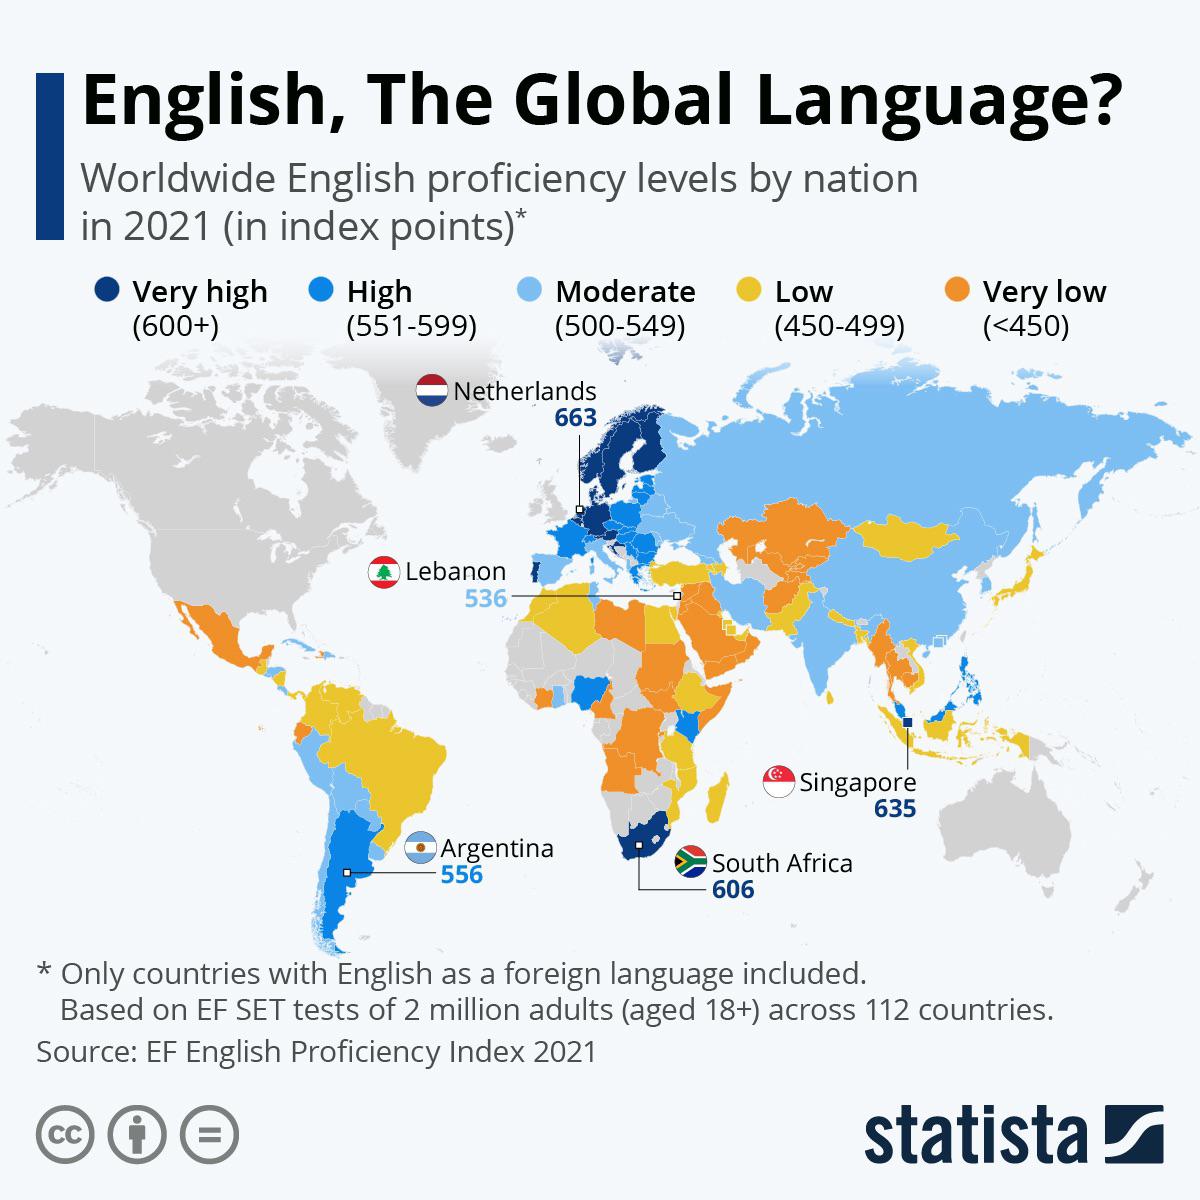 Worldwide English proficiency